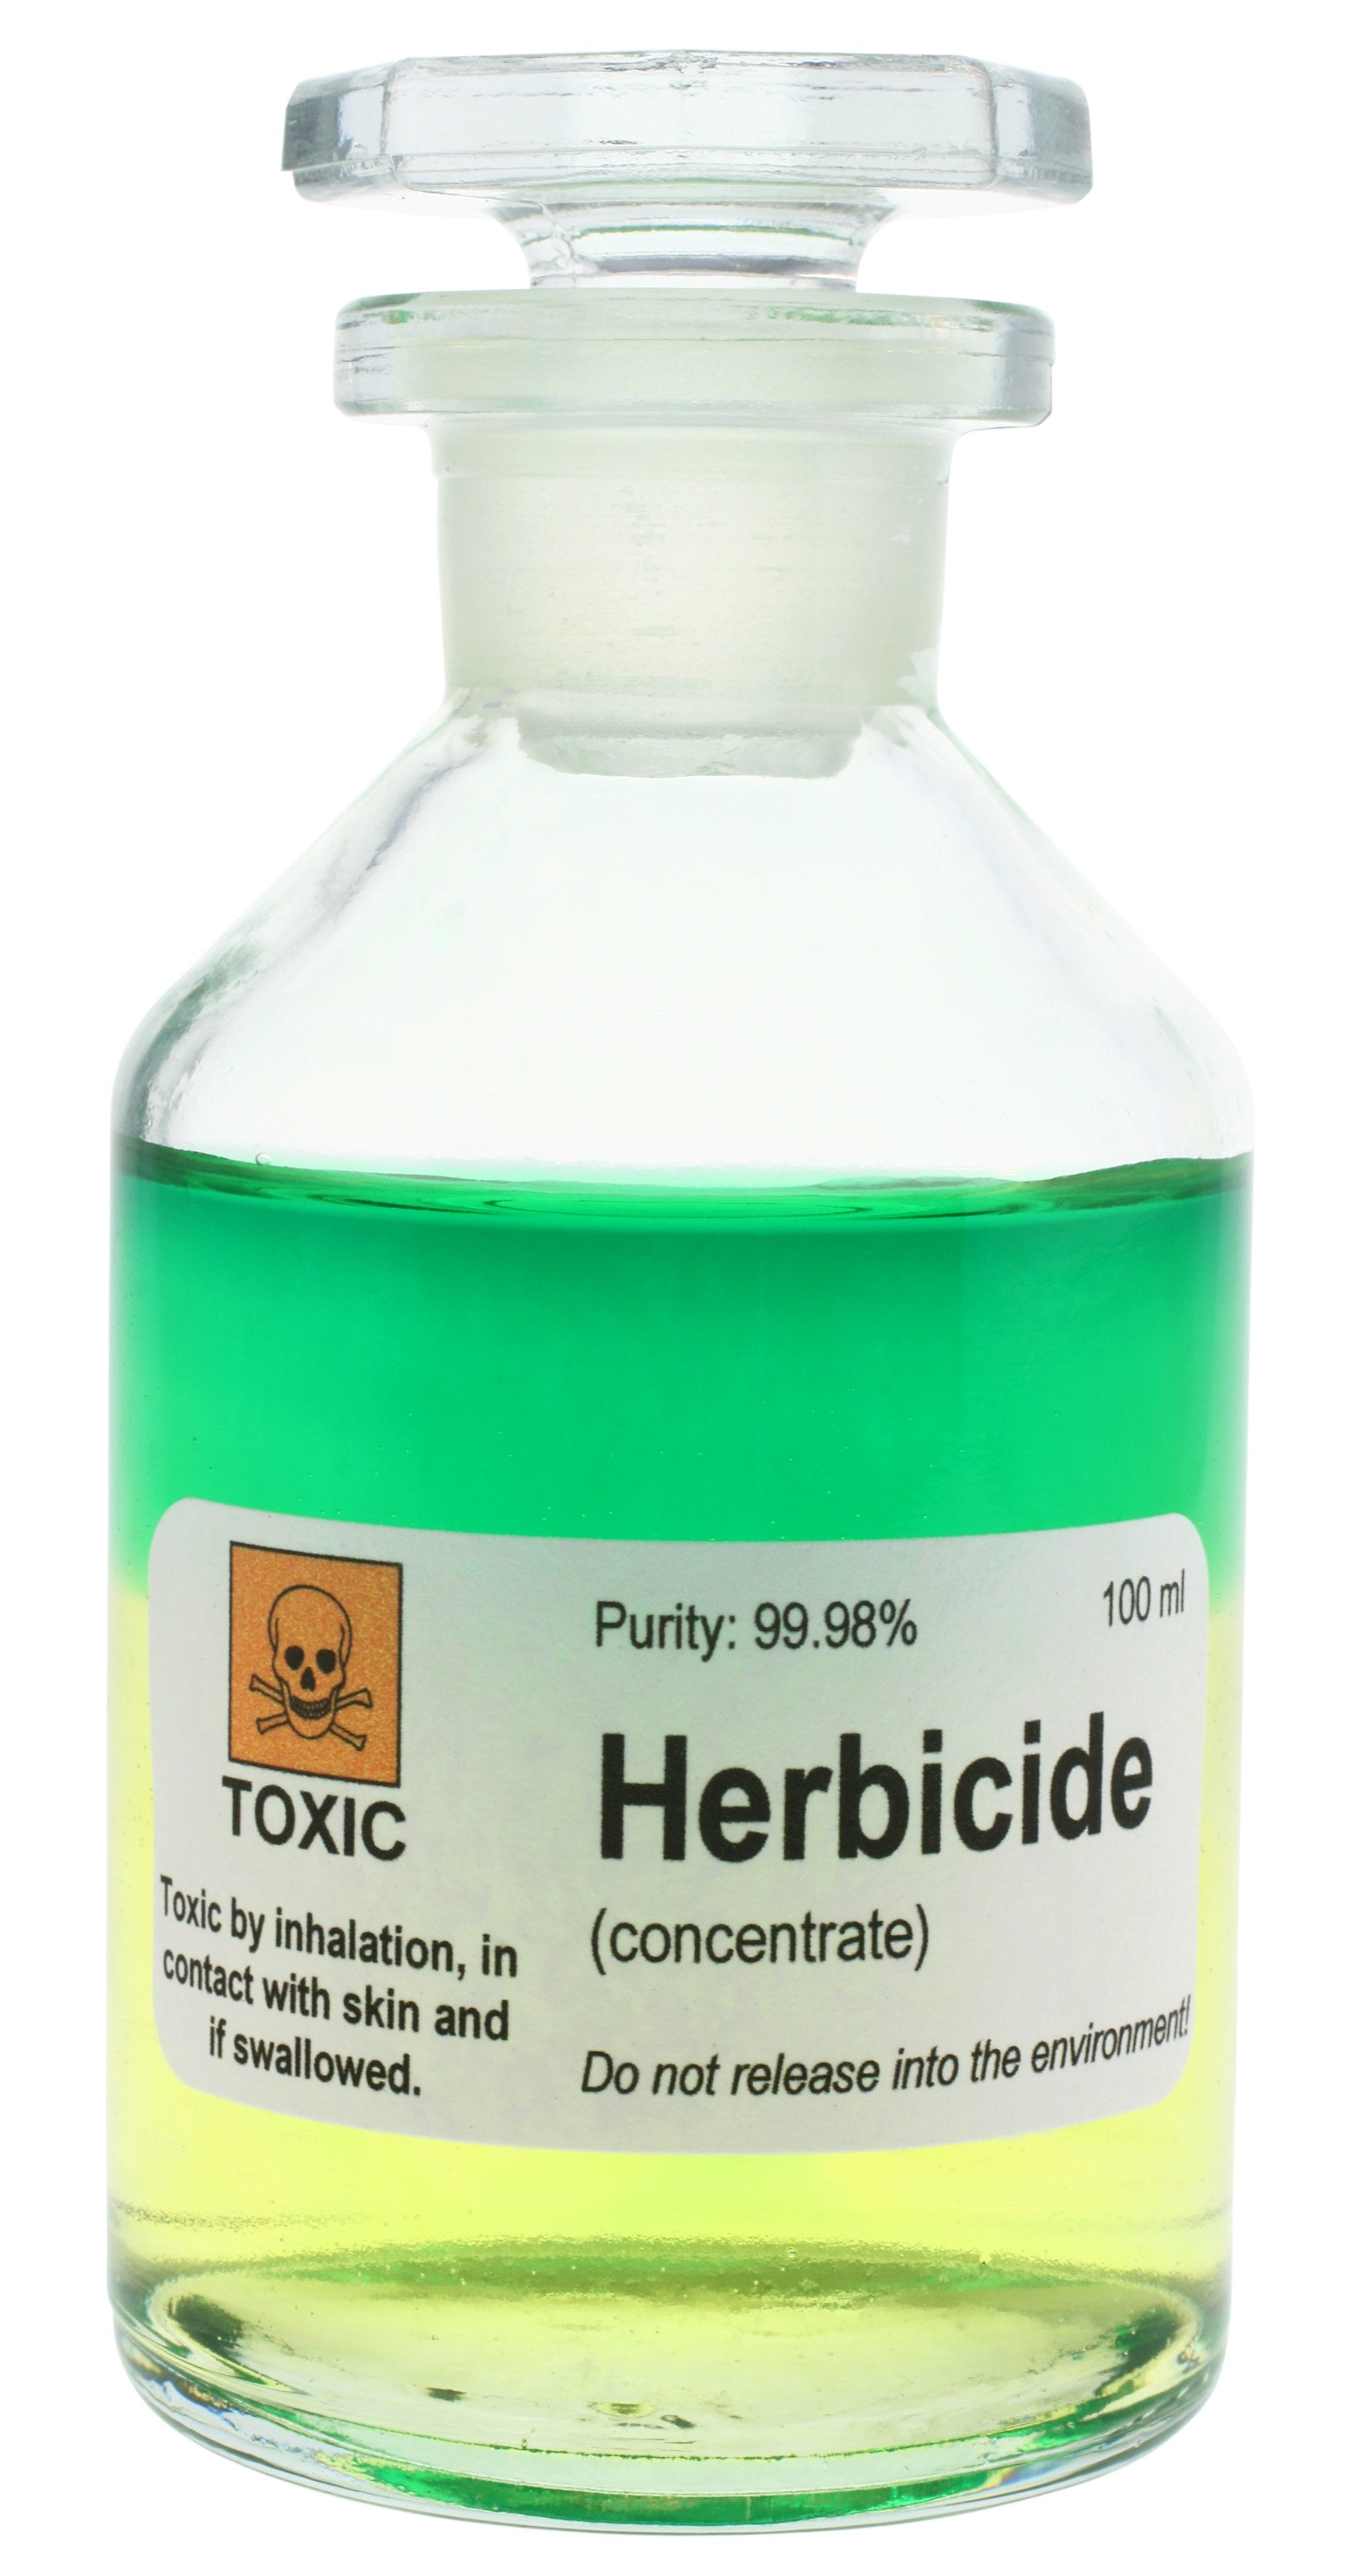 atrazine herbicide